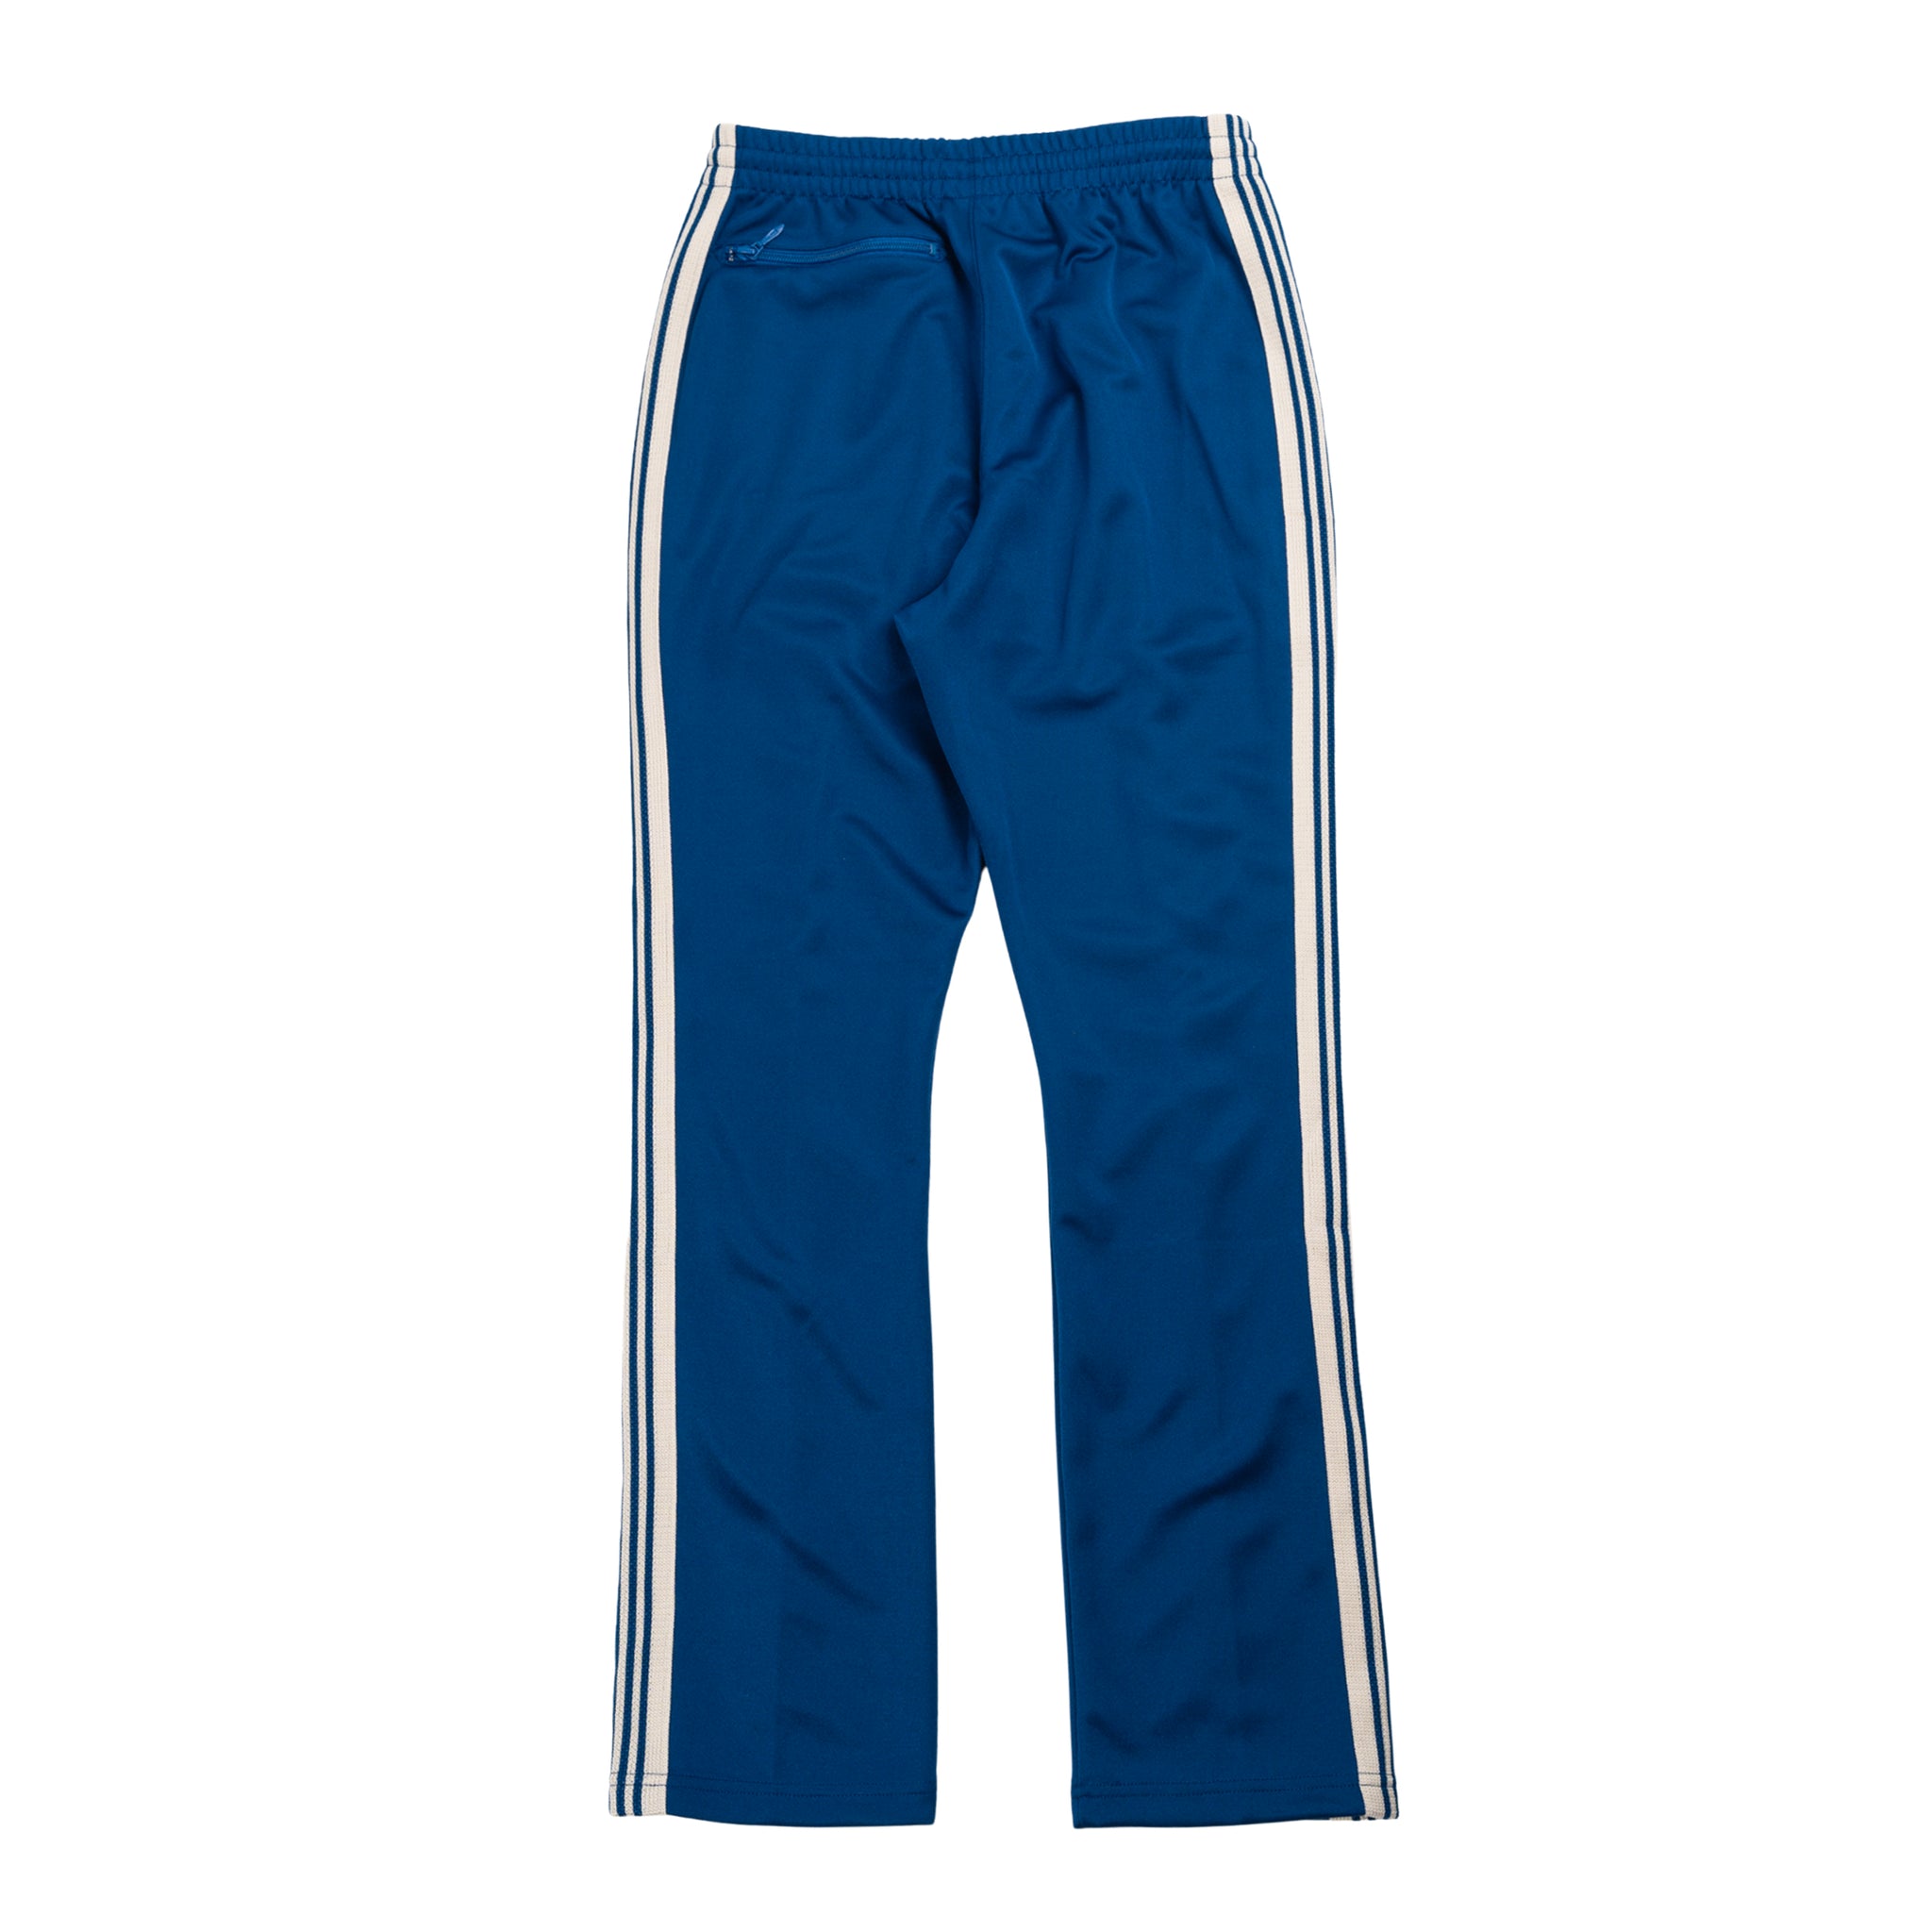 Narrow pantalone della tuta in blu royal